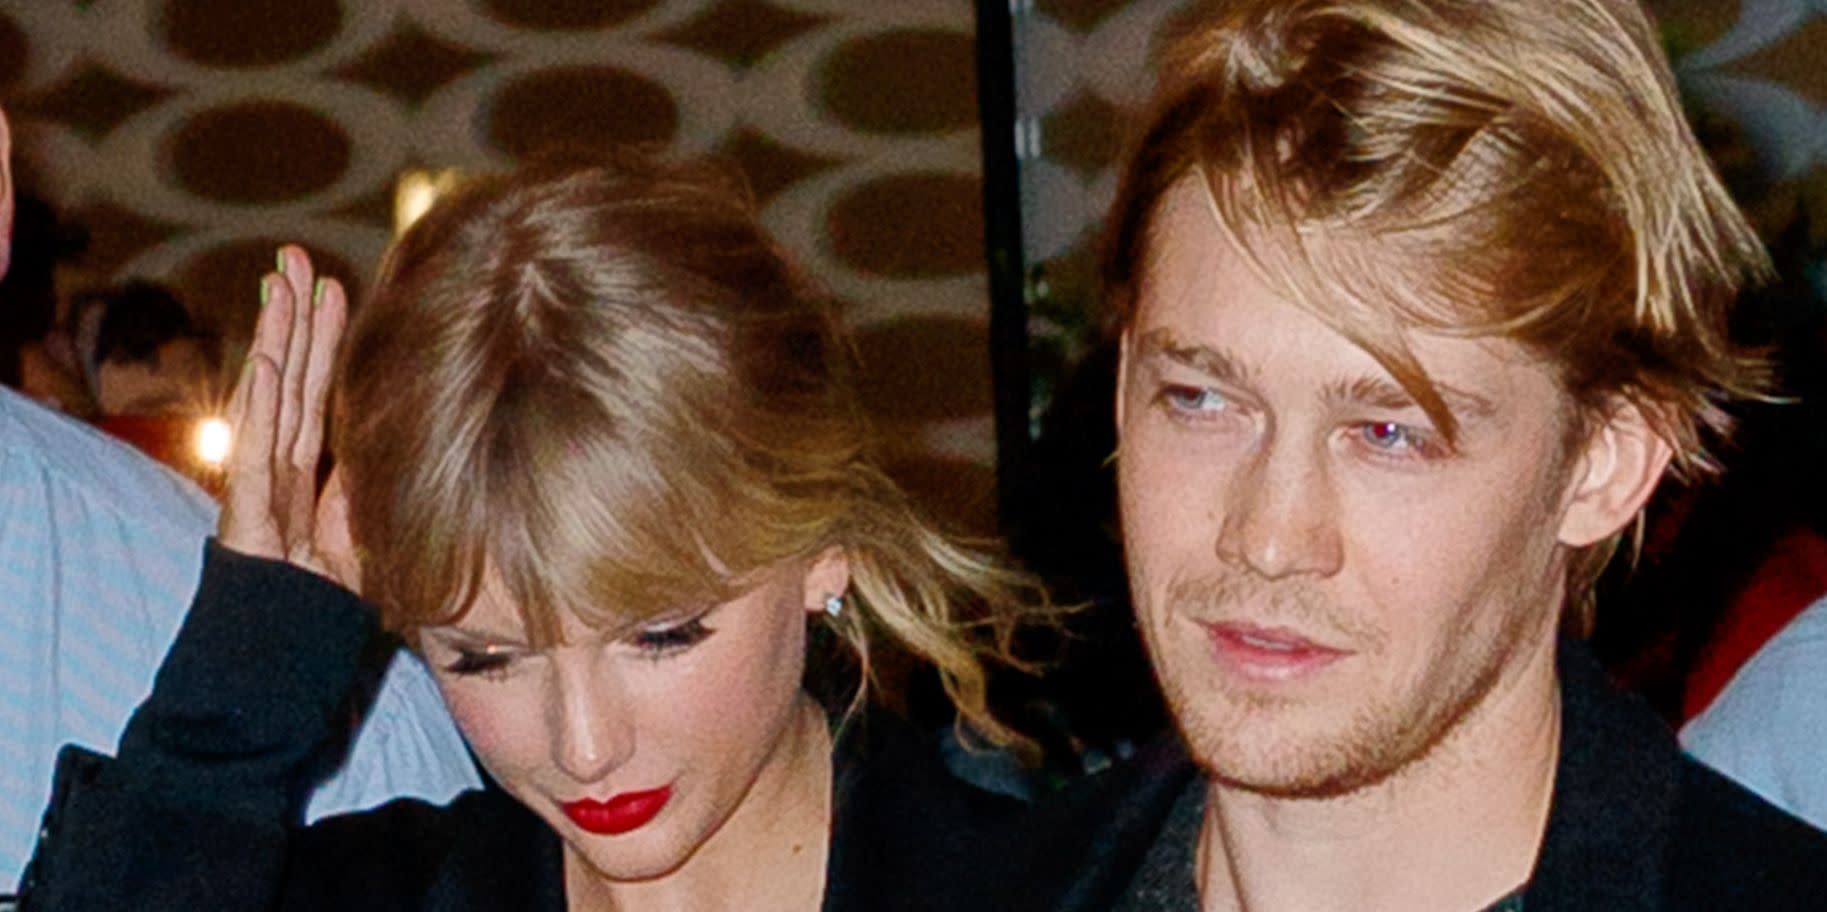 Taylor Swift Confirms Her Boyfriend Joe Alwyn Co-Wrote Two ‘Folklore’ Songs